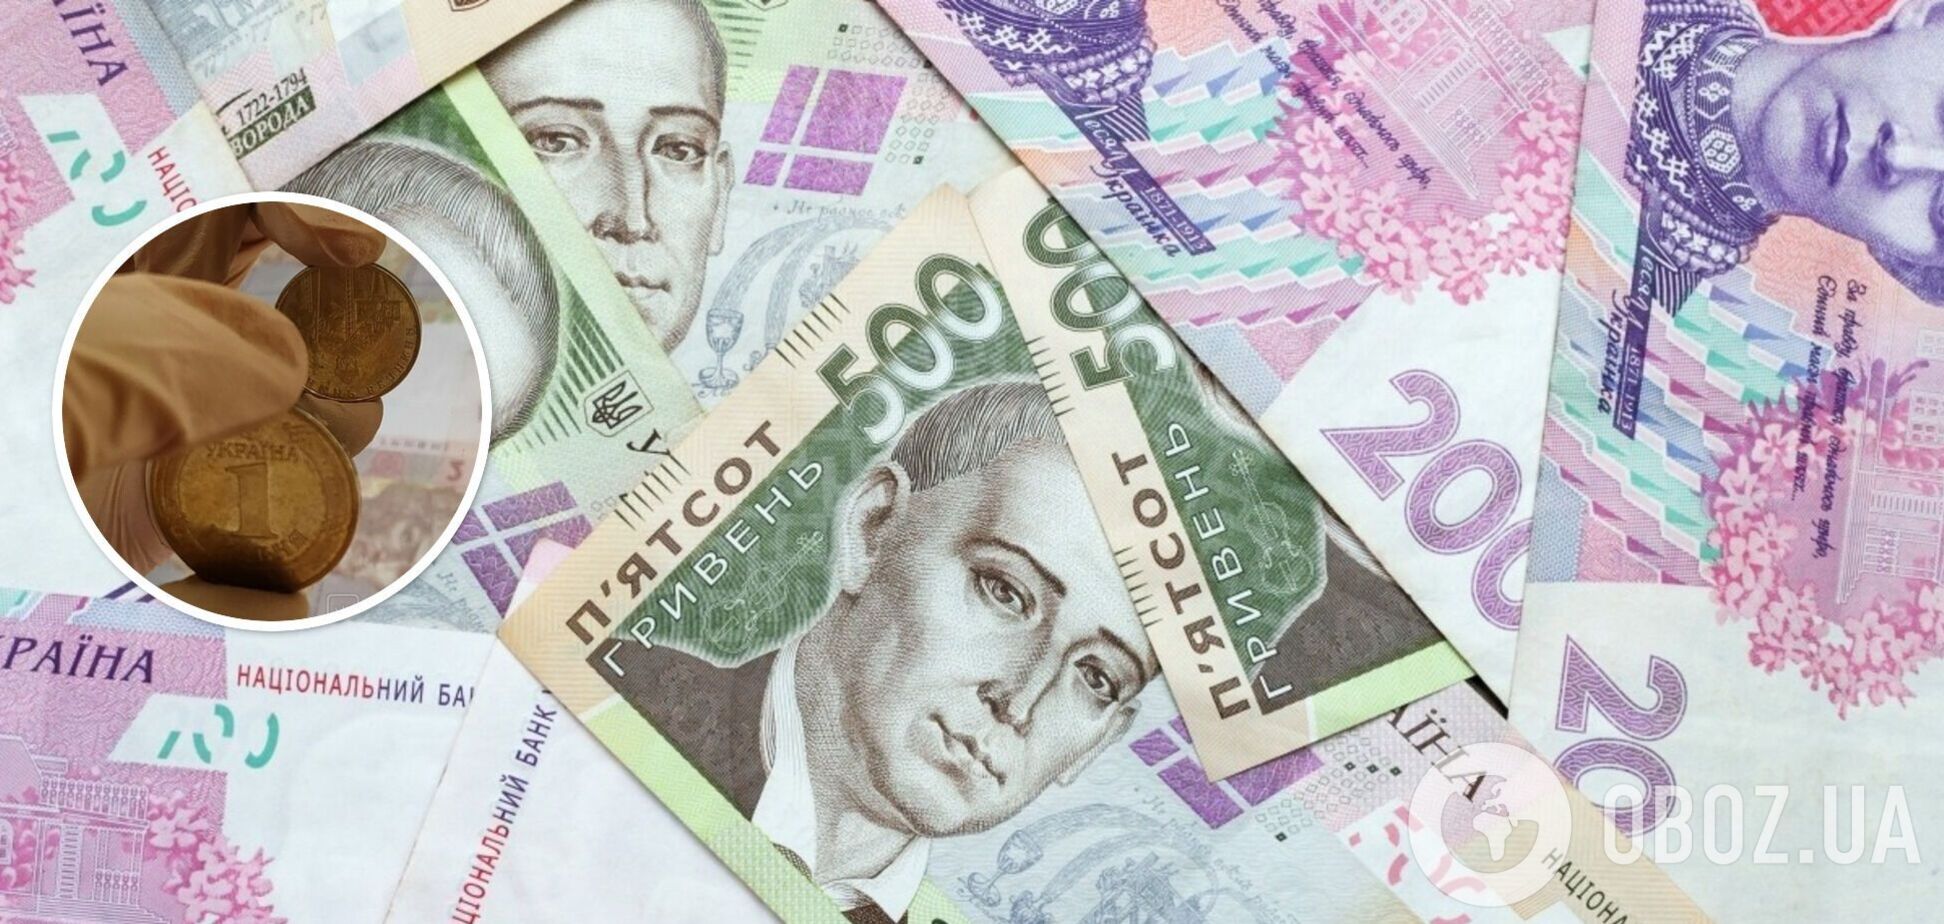 Украинцы могут обогатиться, продав монеты